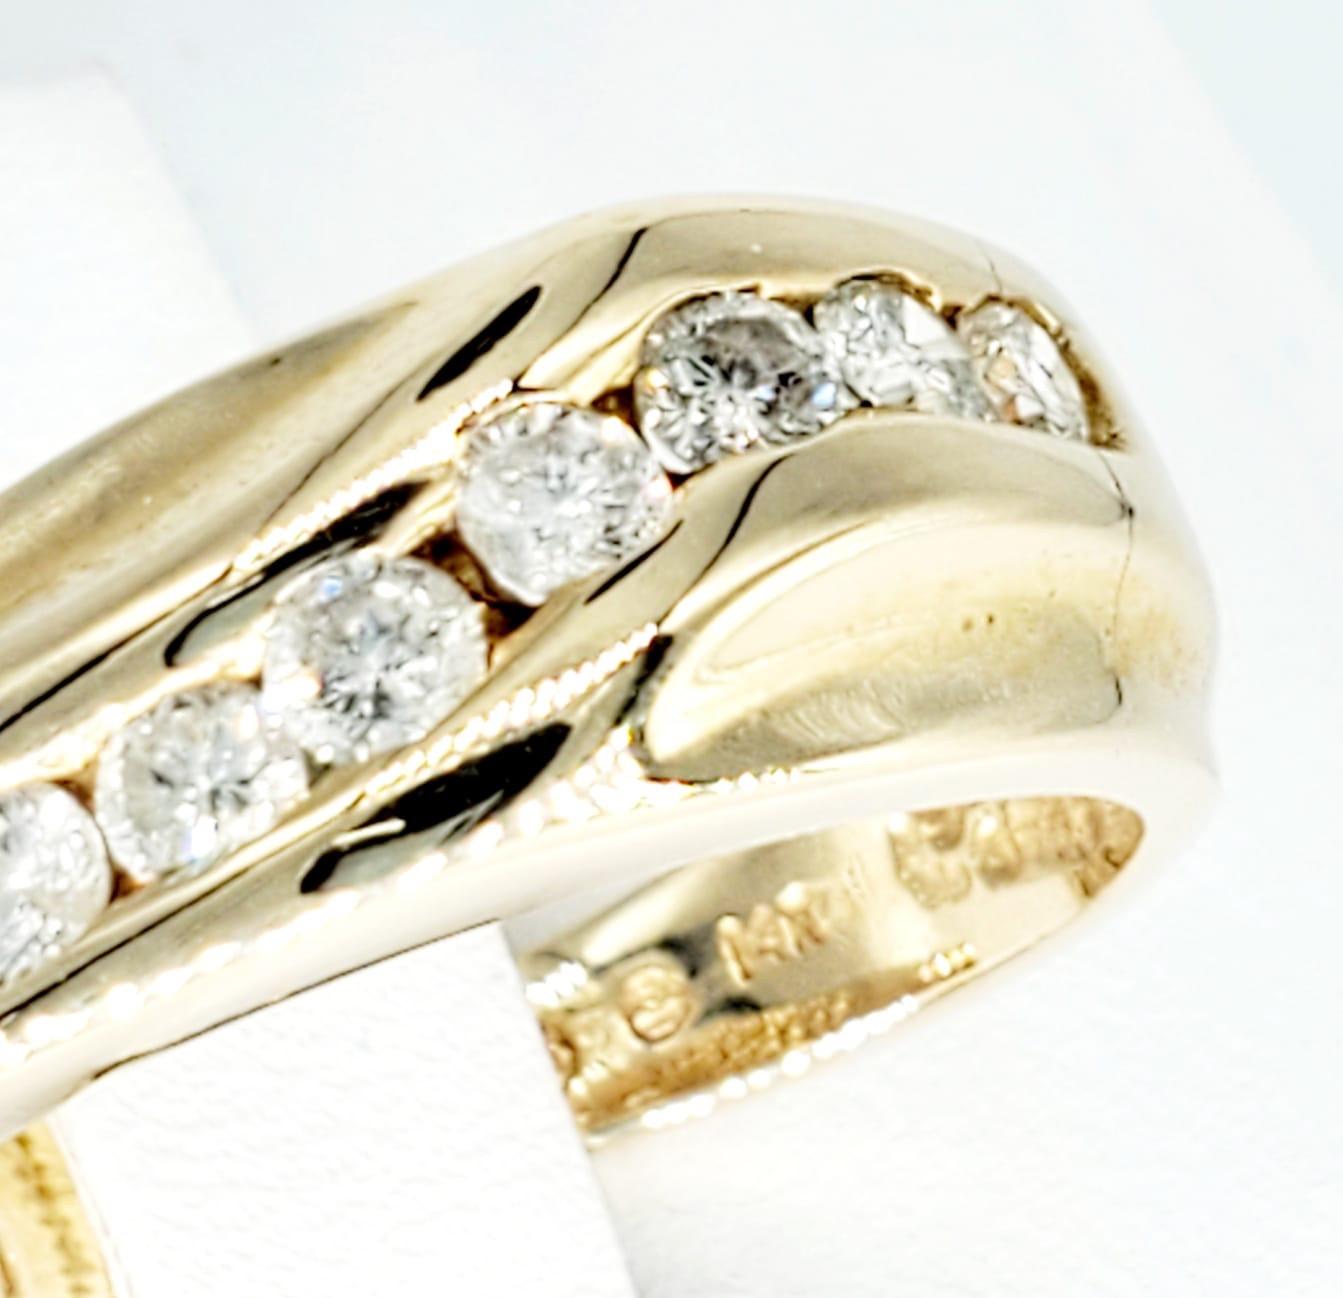 Bracelet de mariage vintage en or 14k de 1,02 carat de diamants pour hommes. La bague comporte 7 diamants d'une valeur totale d'environ 1,02 carat et de pureté SI. La bague est une taille 7 et pèse 5,2 grammes d'or 14k.